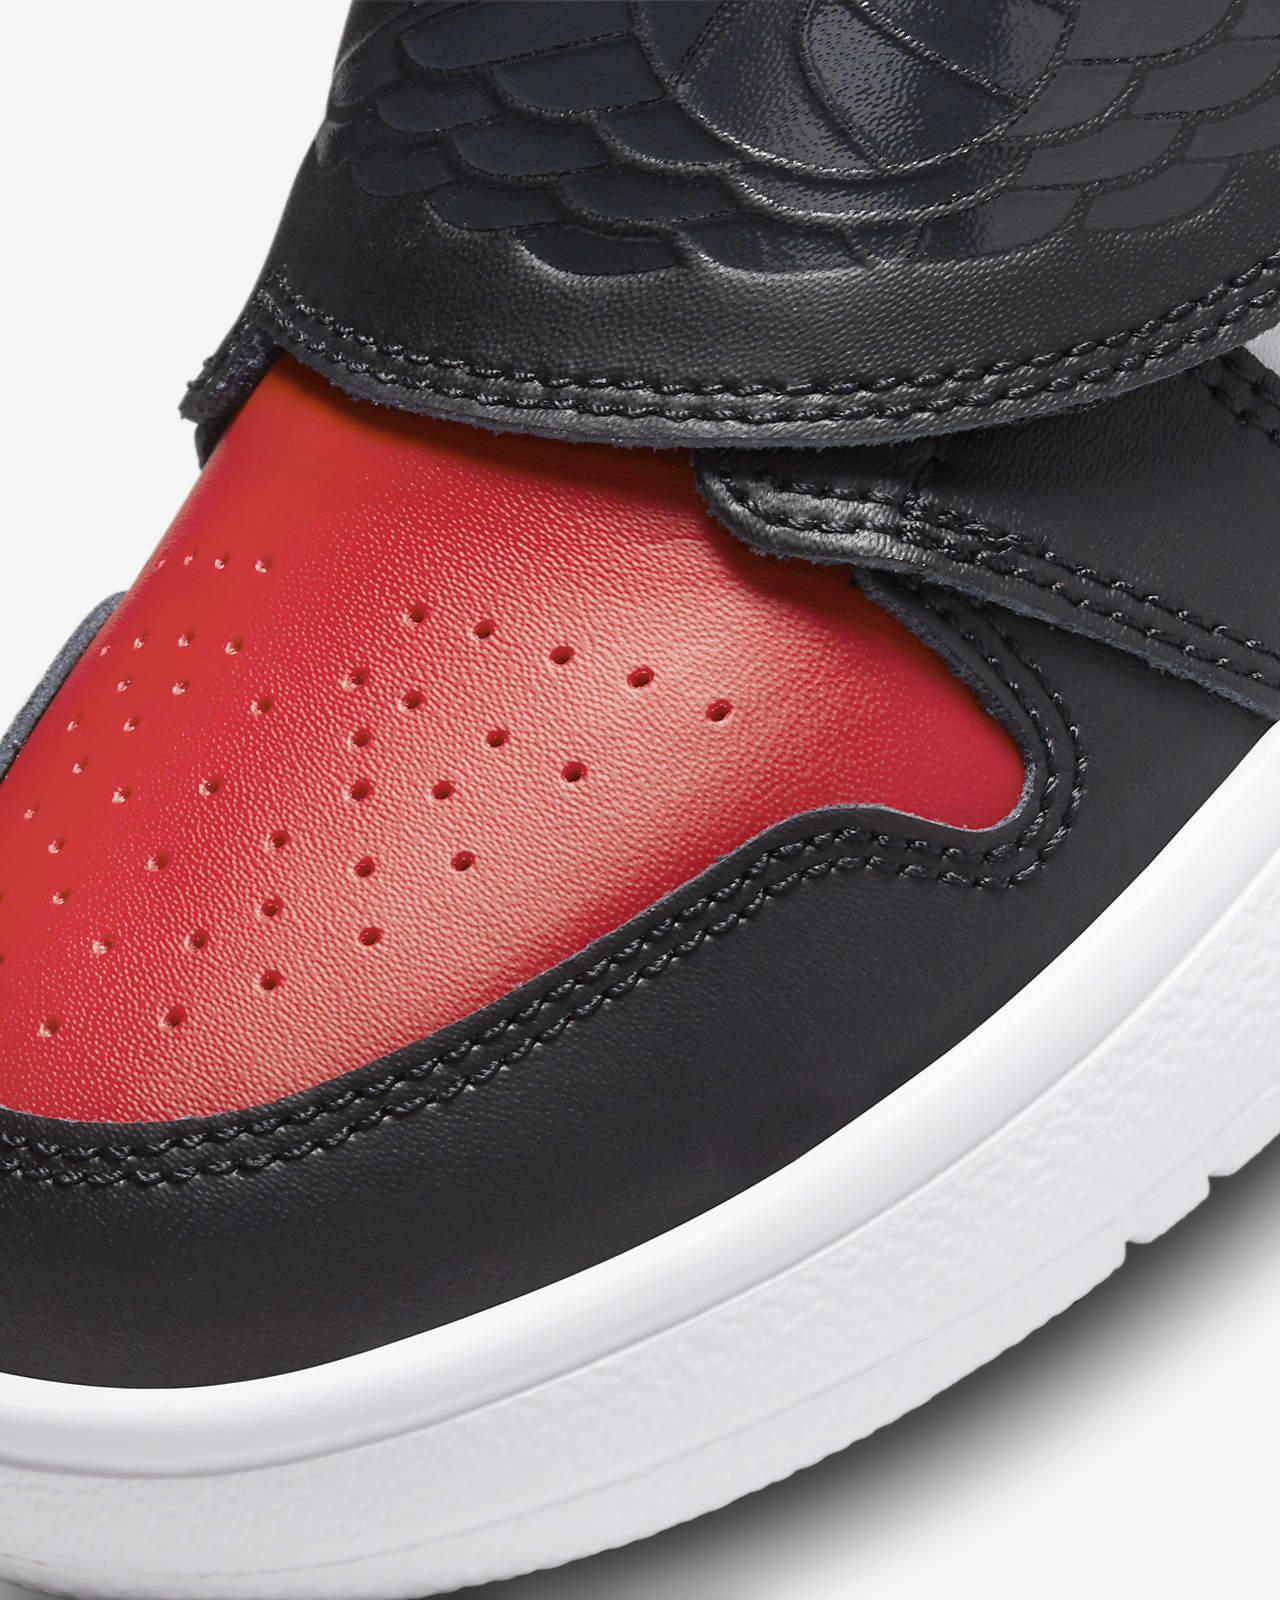 Sky Jordan 1 Zapatillas - Niño/a pequeño/a. Nike